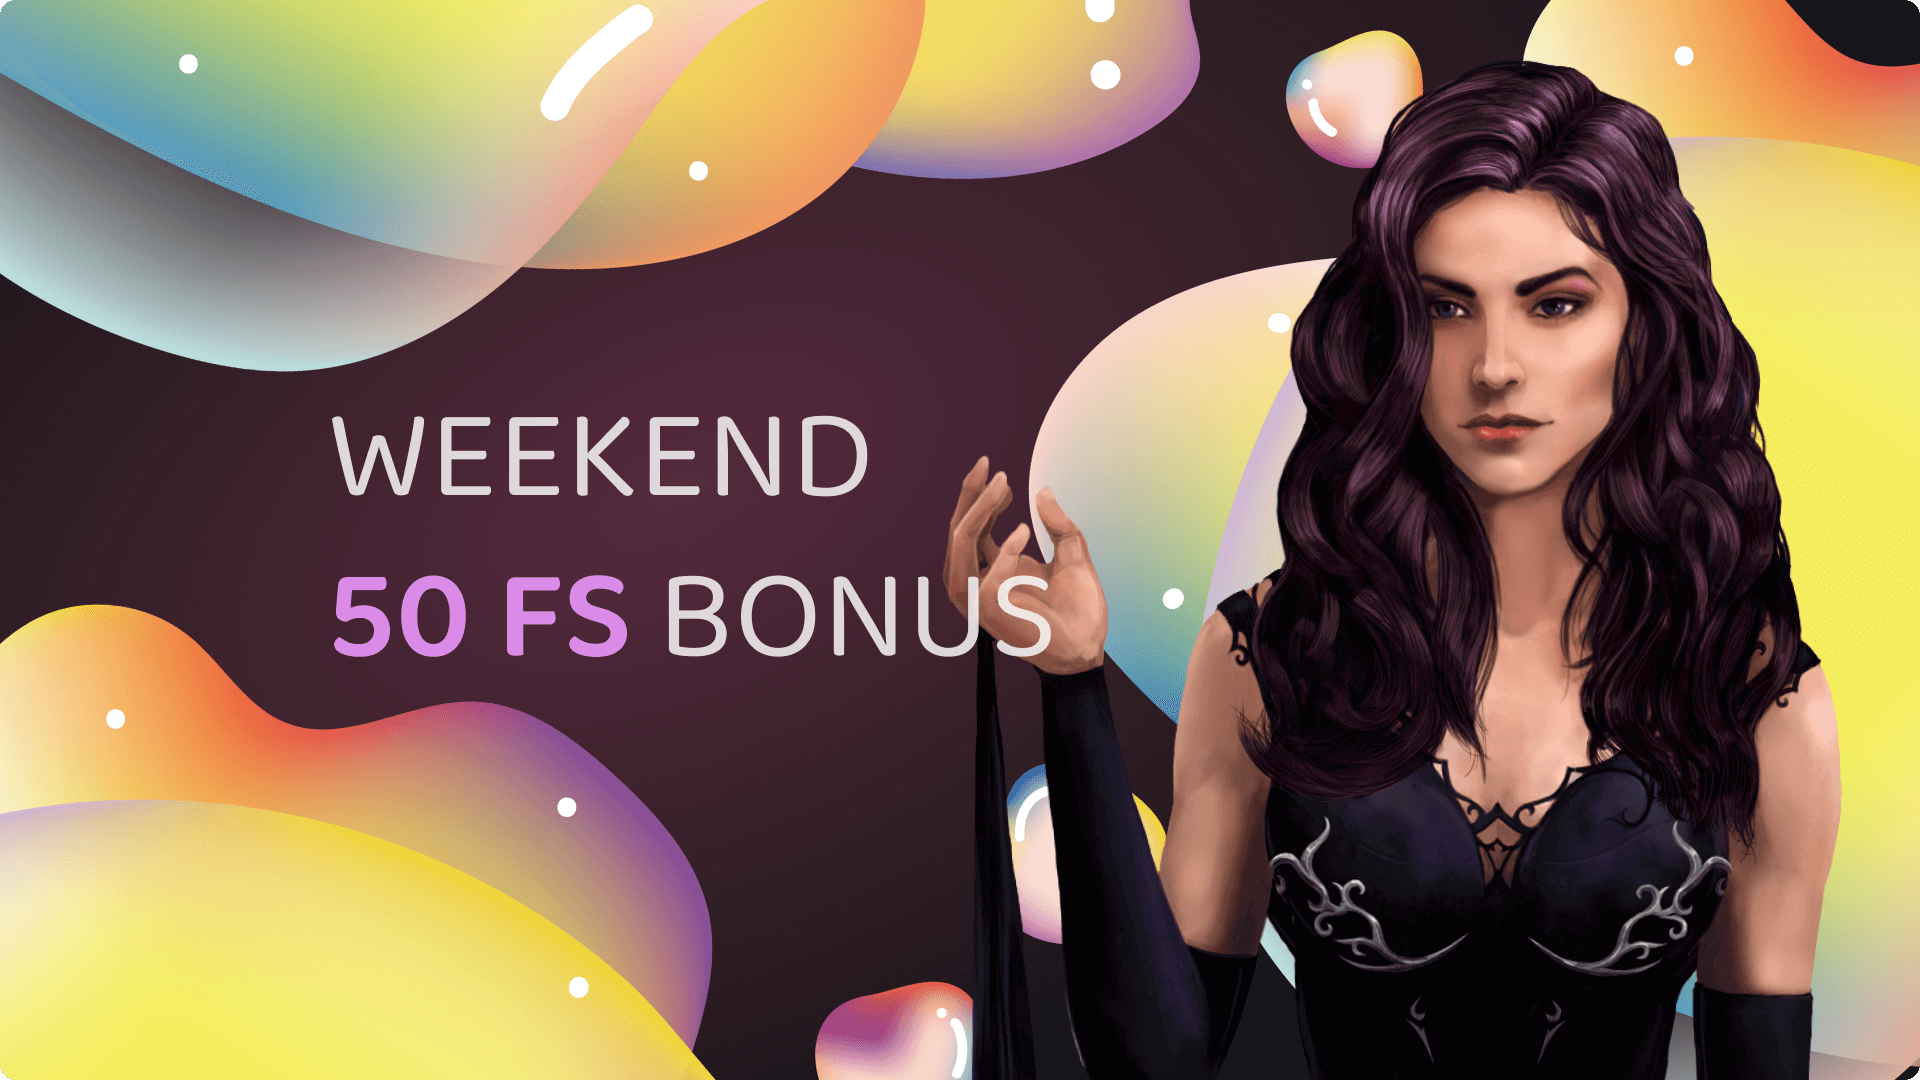 Weekend 50 FS Bonus